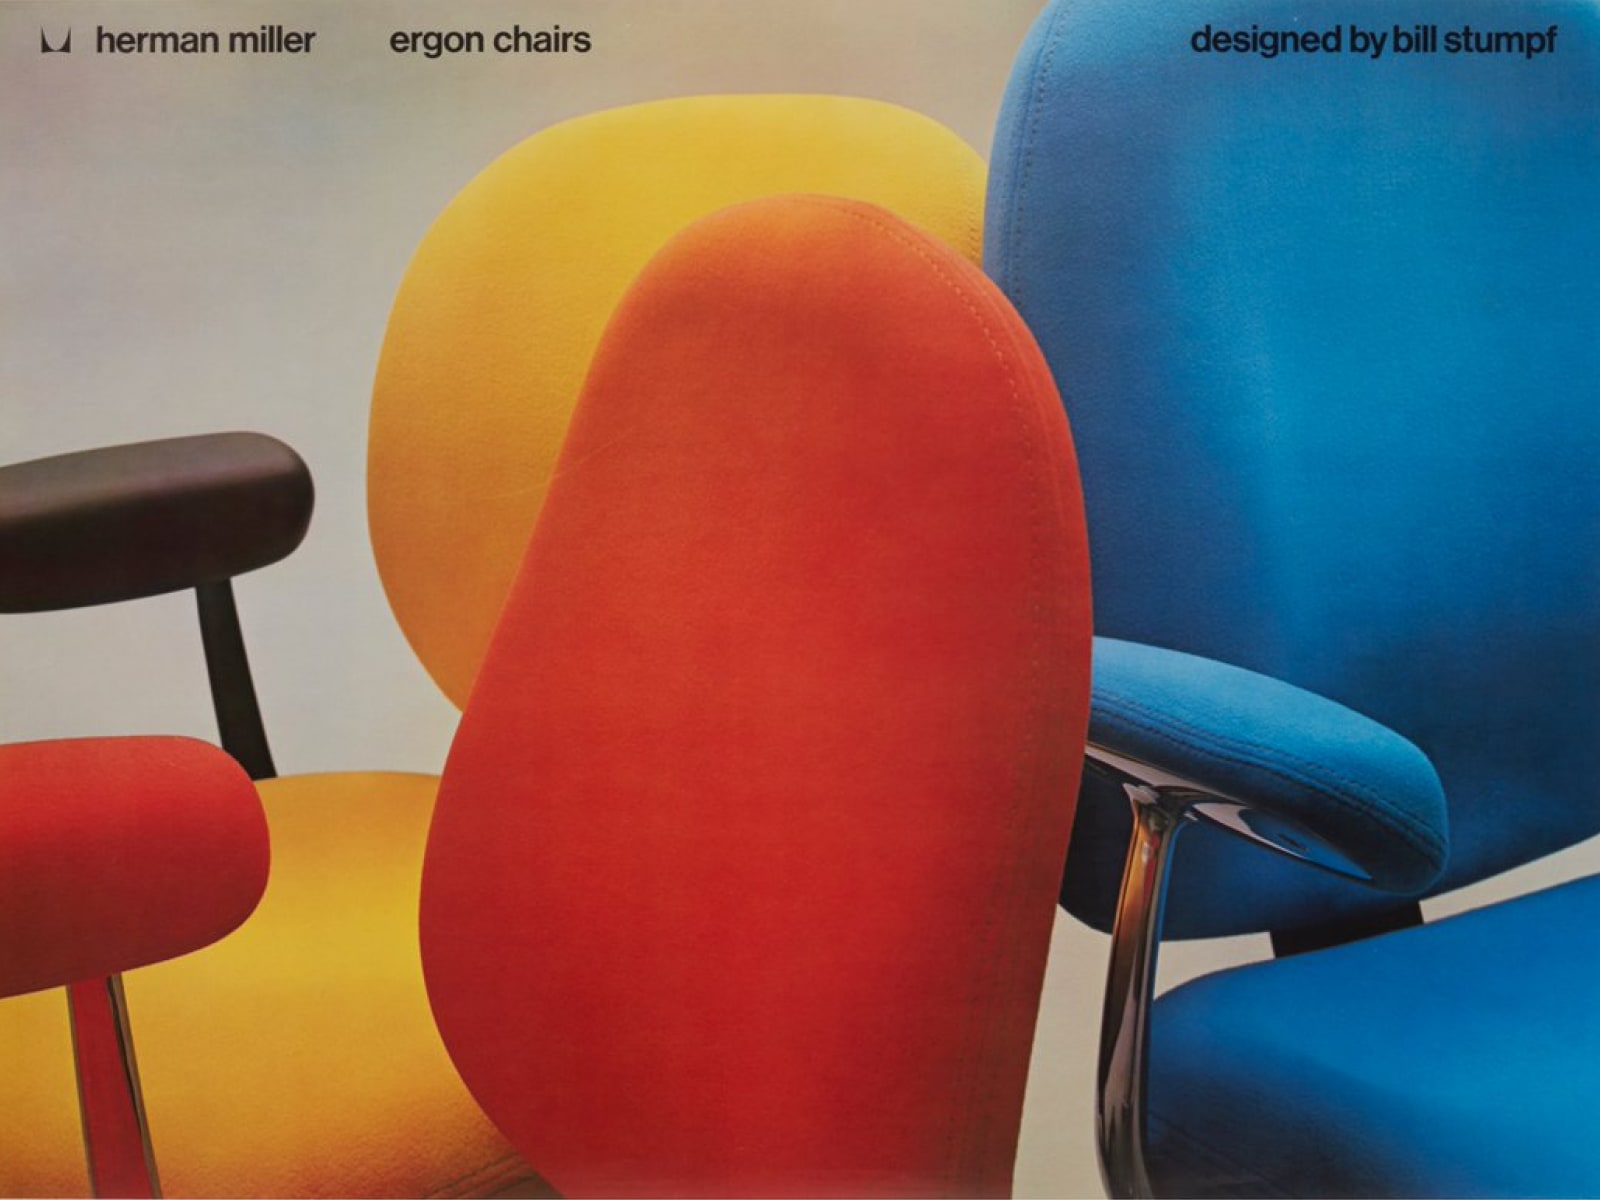 Três cadeiras Ergon exibidas em vermelho, amarelo e azul.